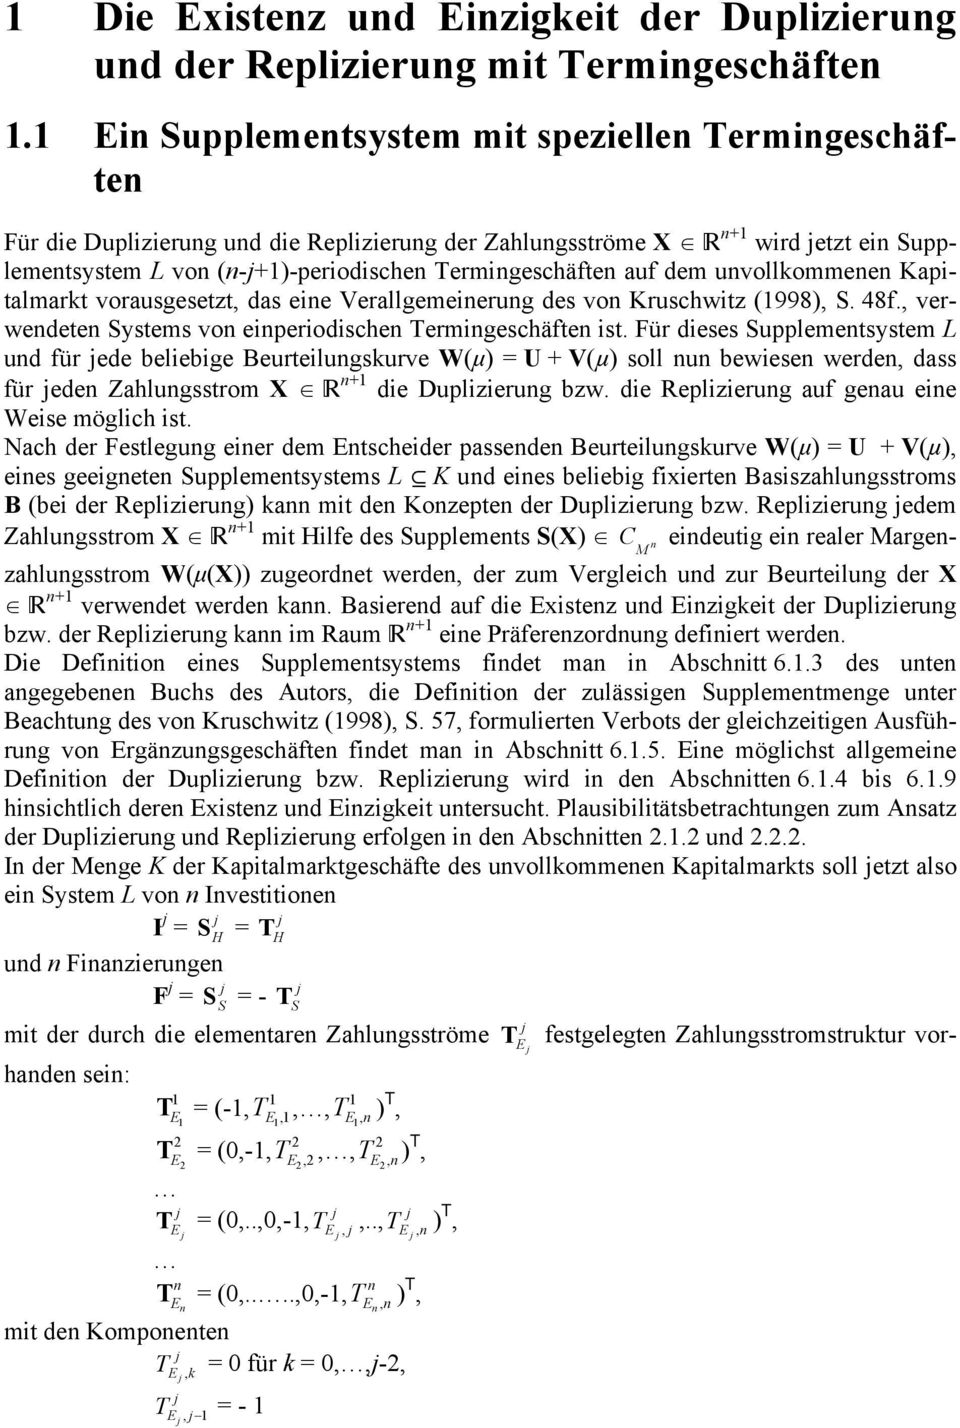 Kapitalmart vorausgesetzt, das eie Verallgemeierug des vo Kruscwitz (1998), S. 48f., verwedete Systems vo eiperiodisce Termigescäfte ist.